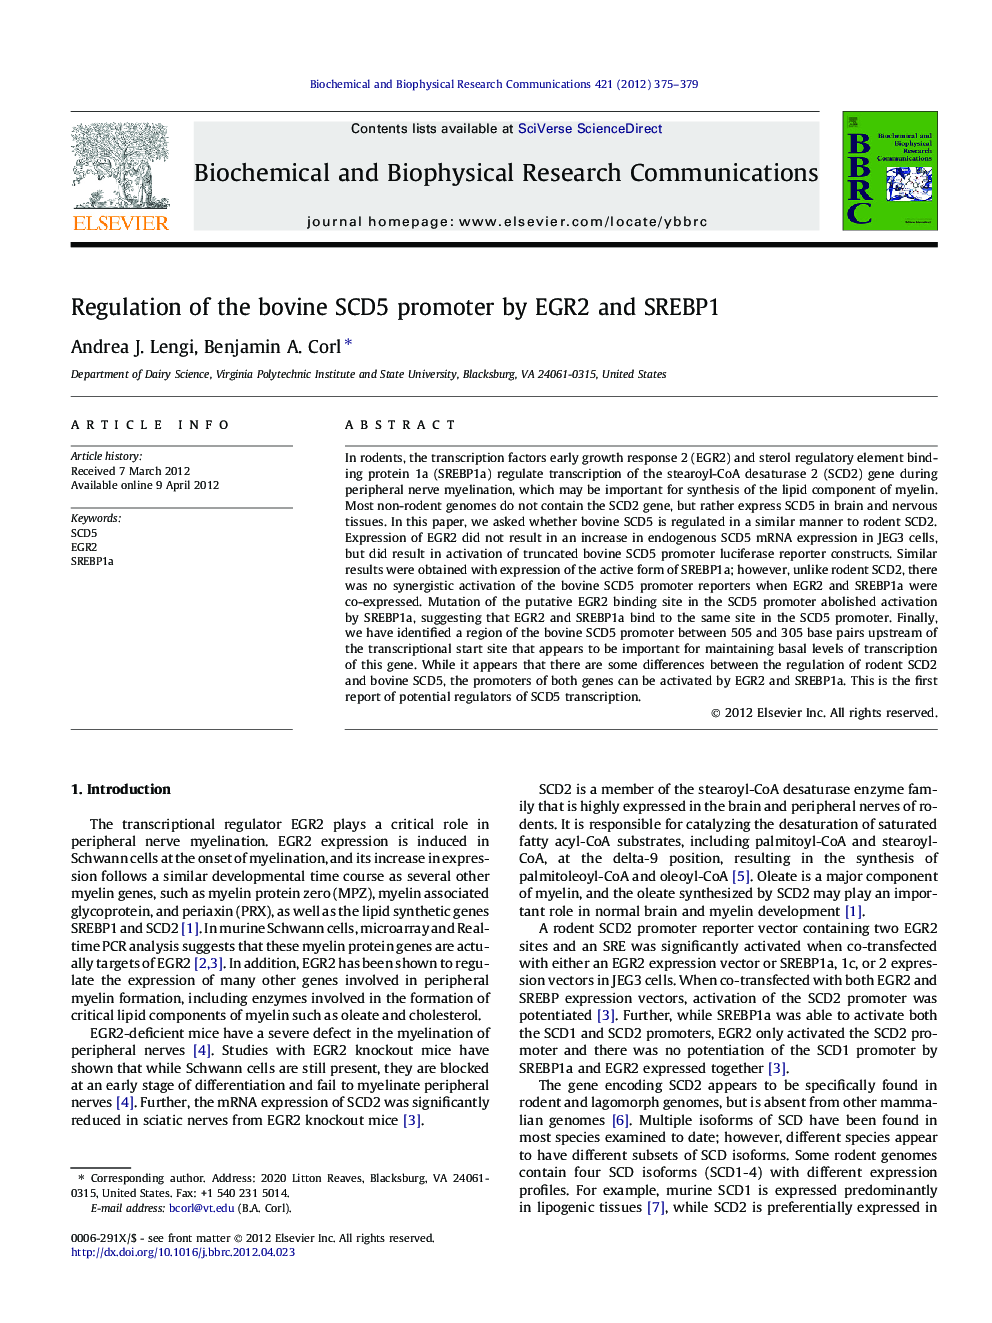 Regulation of the bovine SCD5 promoter by EGR2 and SREBP1